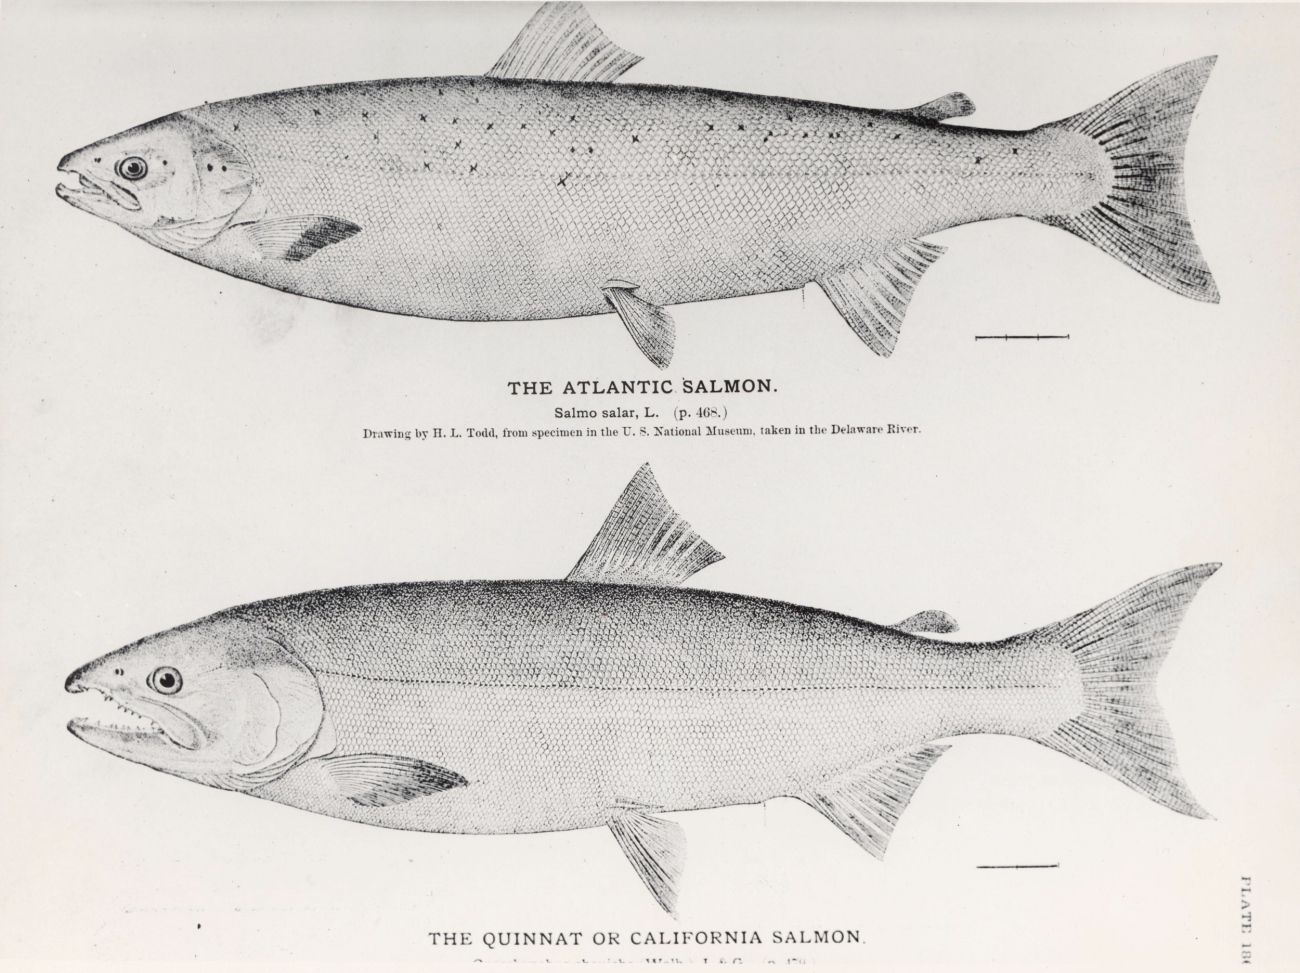 Drawings of Atlantic salmon (Salmo salar) and the Quinnat or California salmon